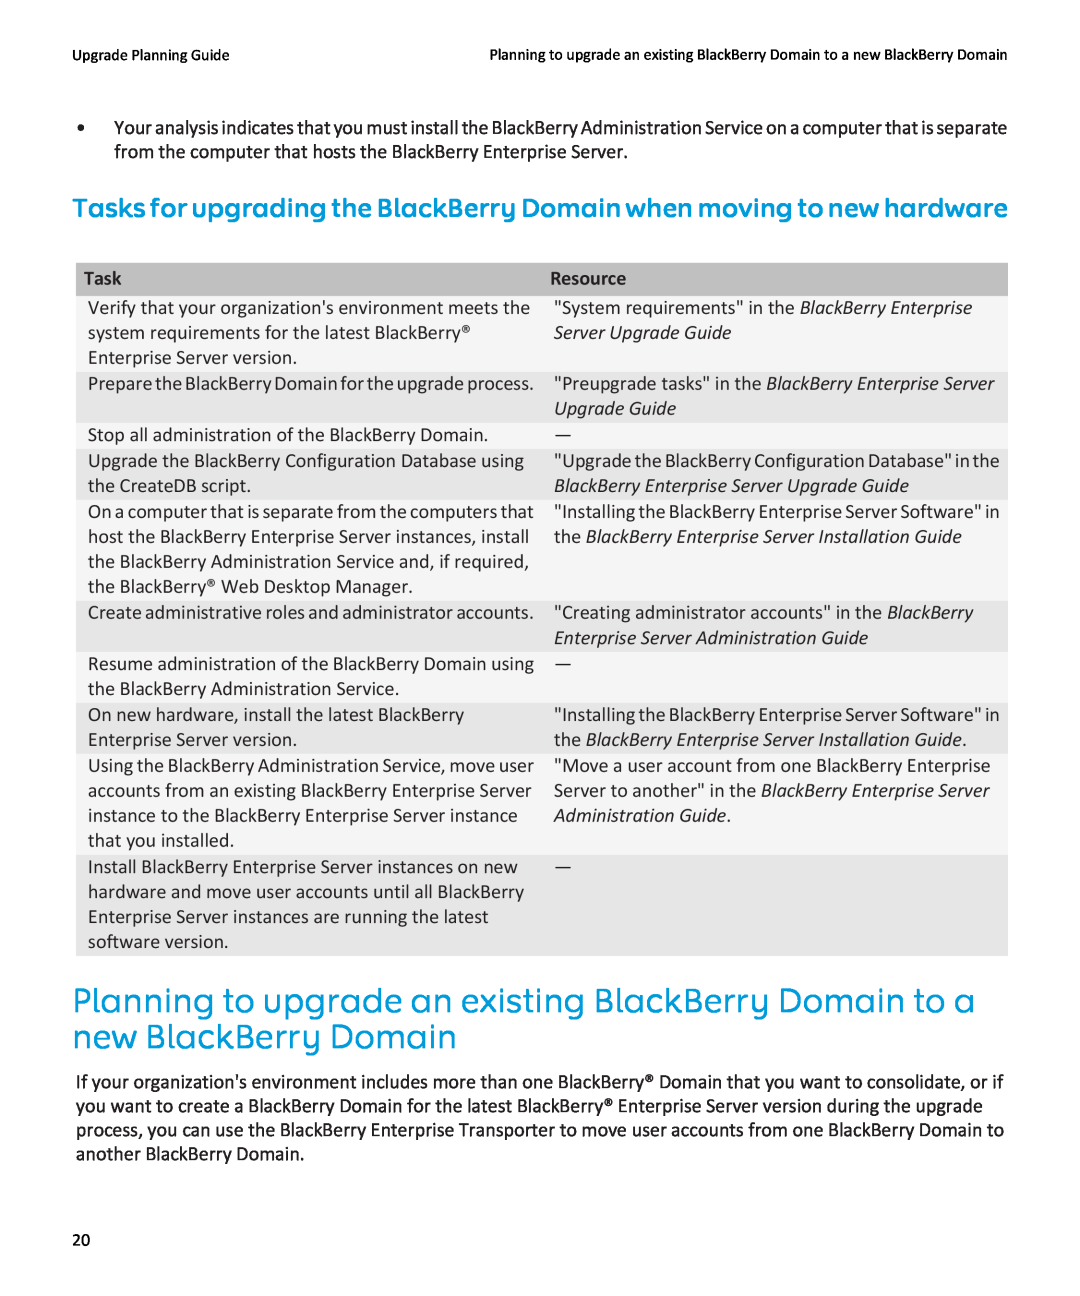 Blackberry blackberry enterprise server Tasks for upgrading the BlackBerry Domain when moving to new hardware, Resource 